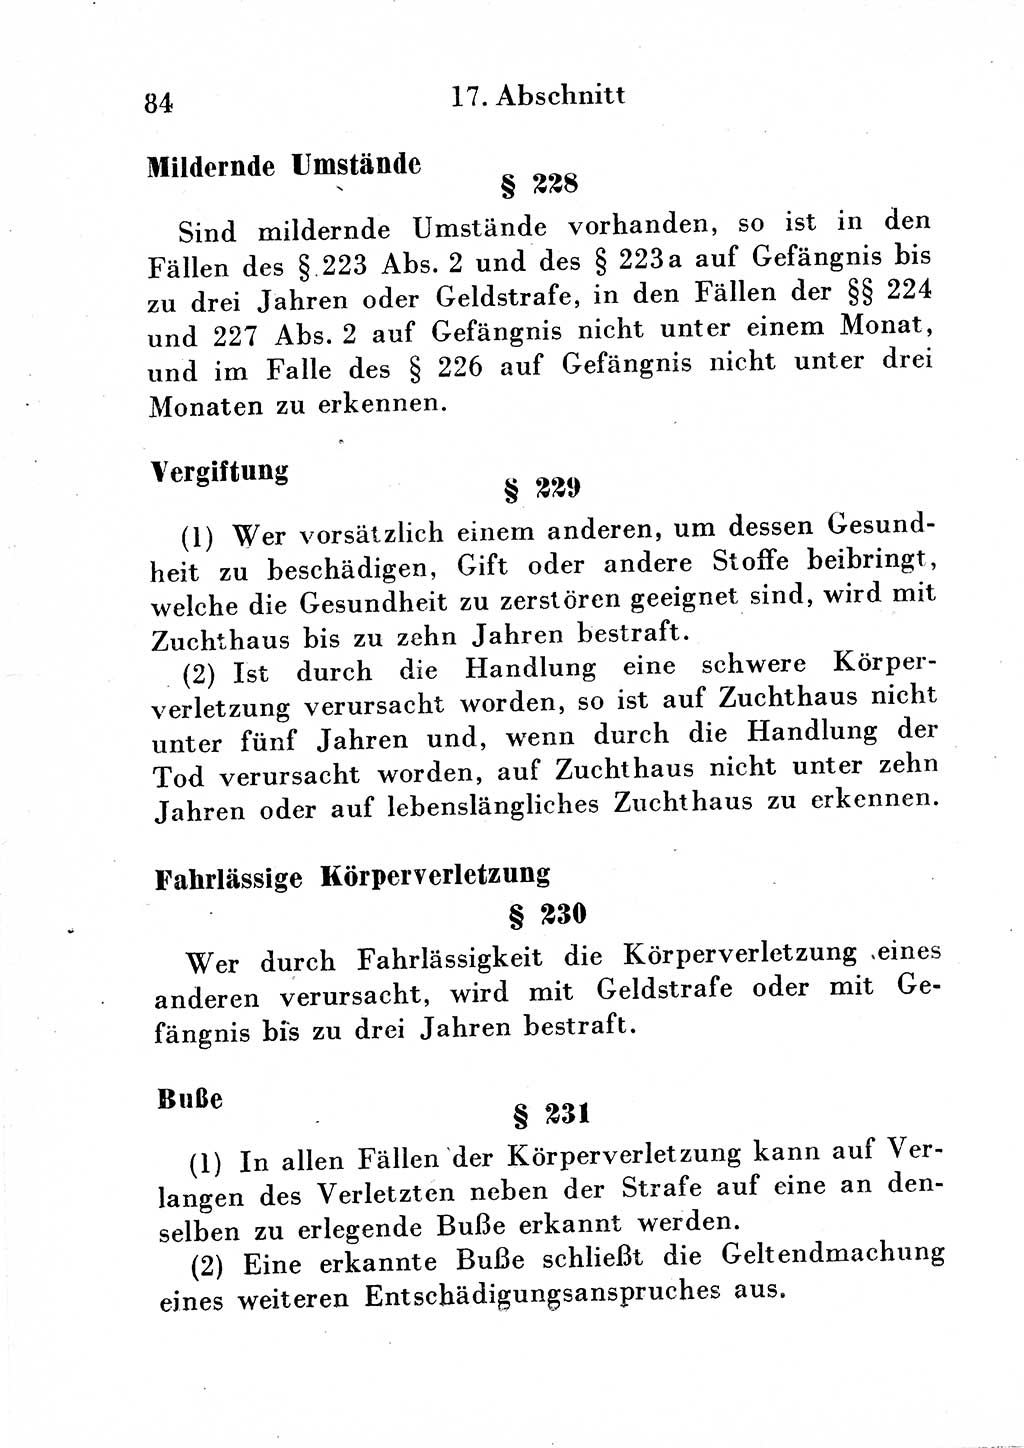 Strafgesetzbuch (StGB) und andere Strafgesetze [Deutsche Demokratische Republik (DDR)] 1954, Seite 84 (StGB Strafges. DDR 1954, S. 84)